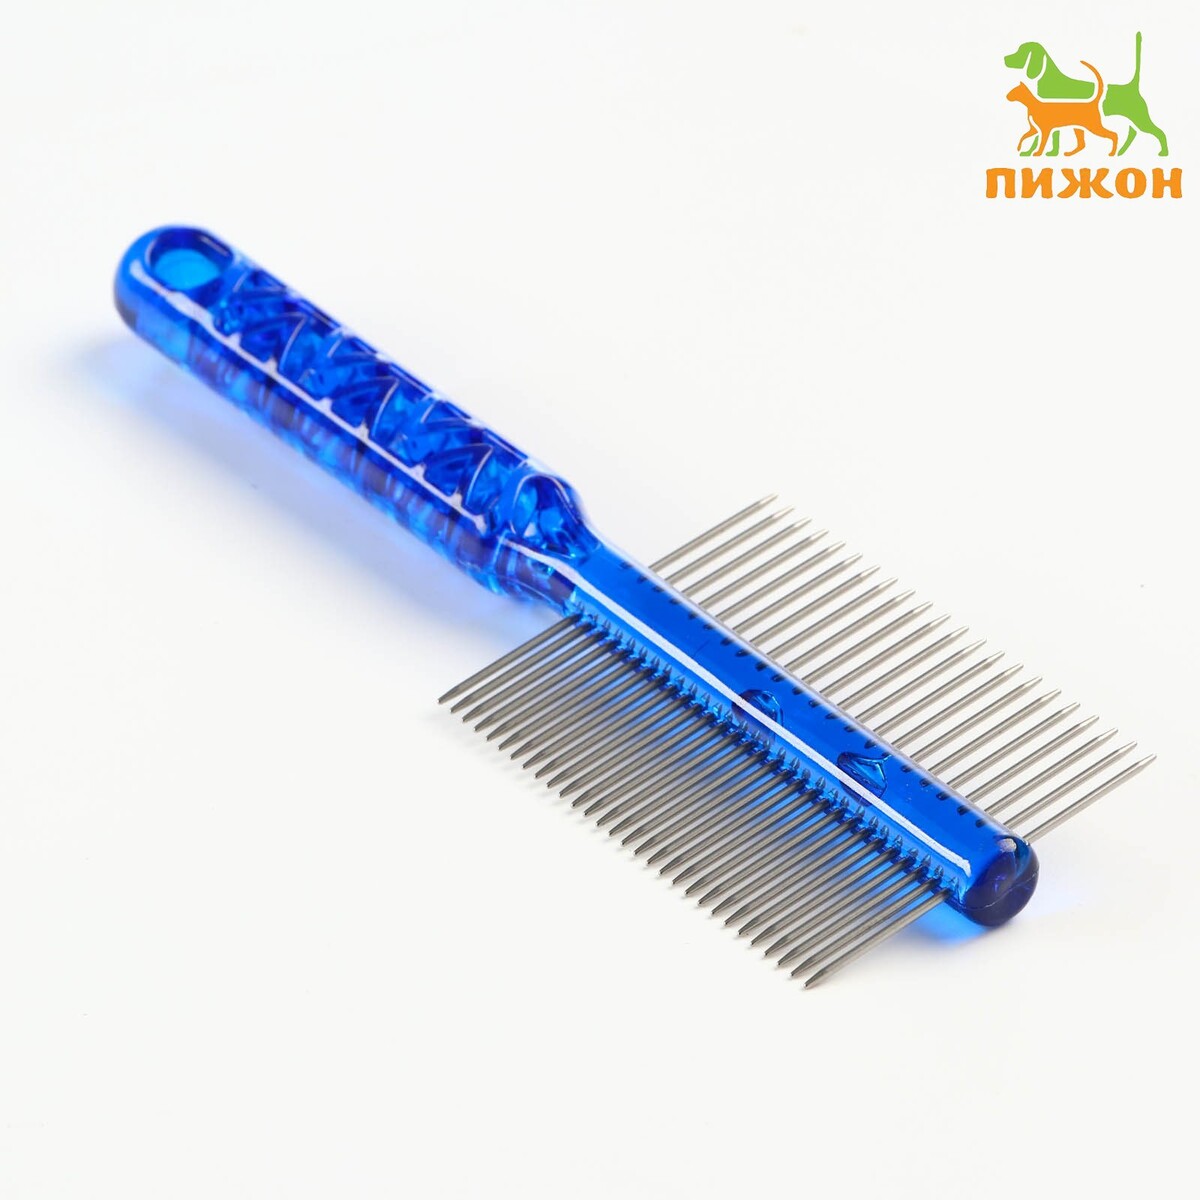 Расческа для шерсти щетка шерсти с удлиненными силиконовыми зубцами и массажным эффектом 9 8 х 18 5 голубая